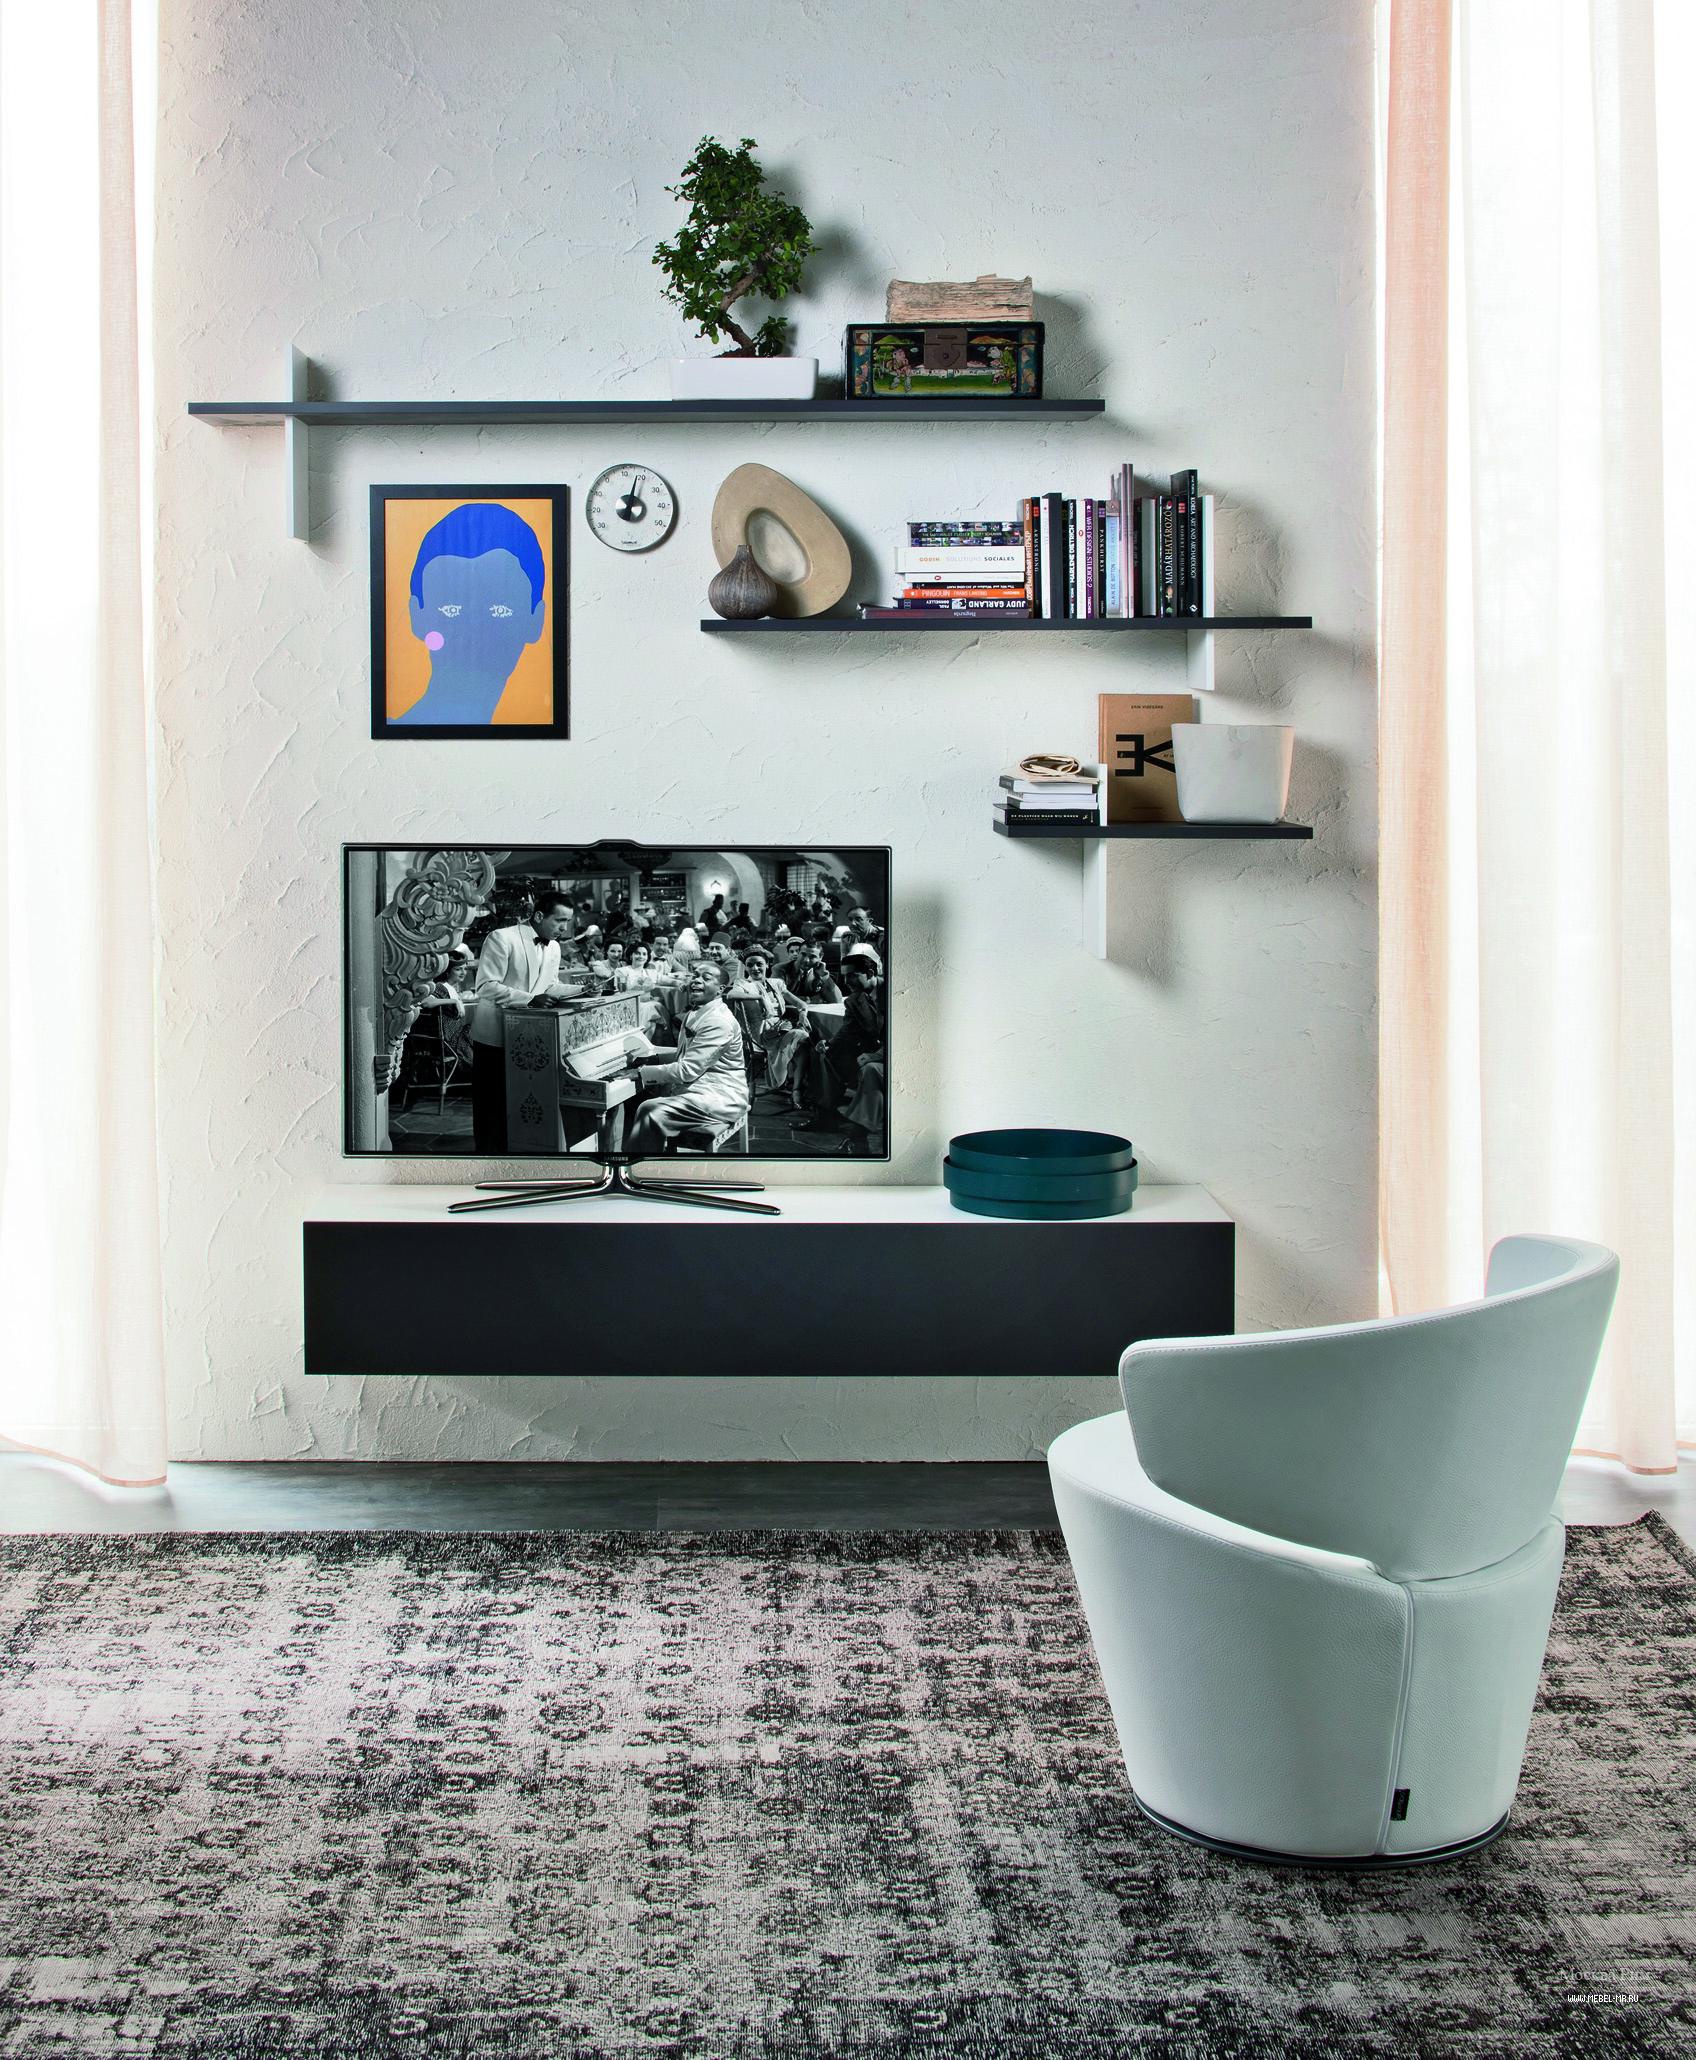 Корпусные и модульные стенки Ikea 30 фото стандартные модели мебели под ТВ в интерьере гостиной и мини-варианты под телевизор в зал